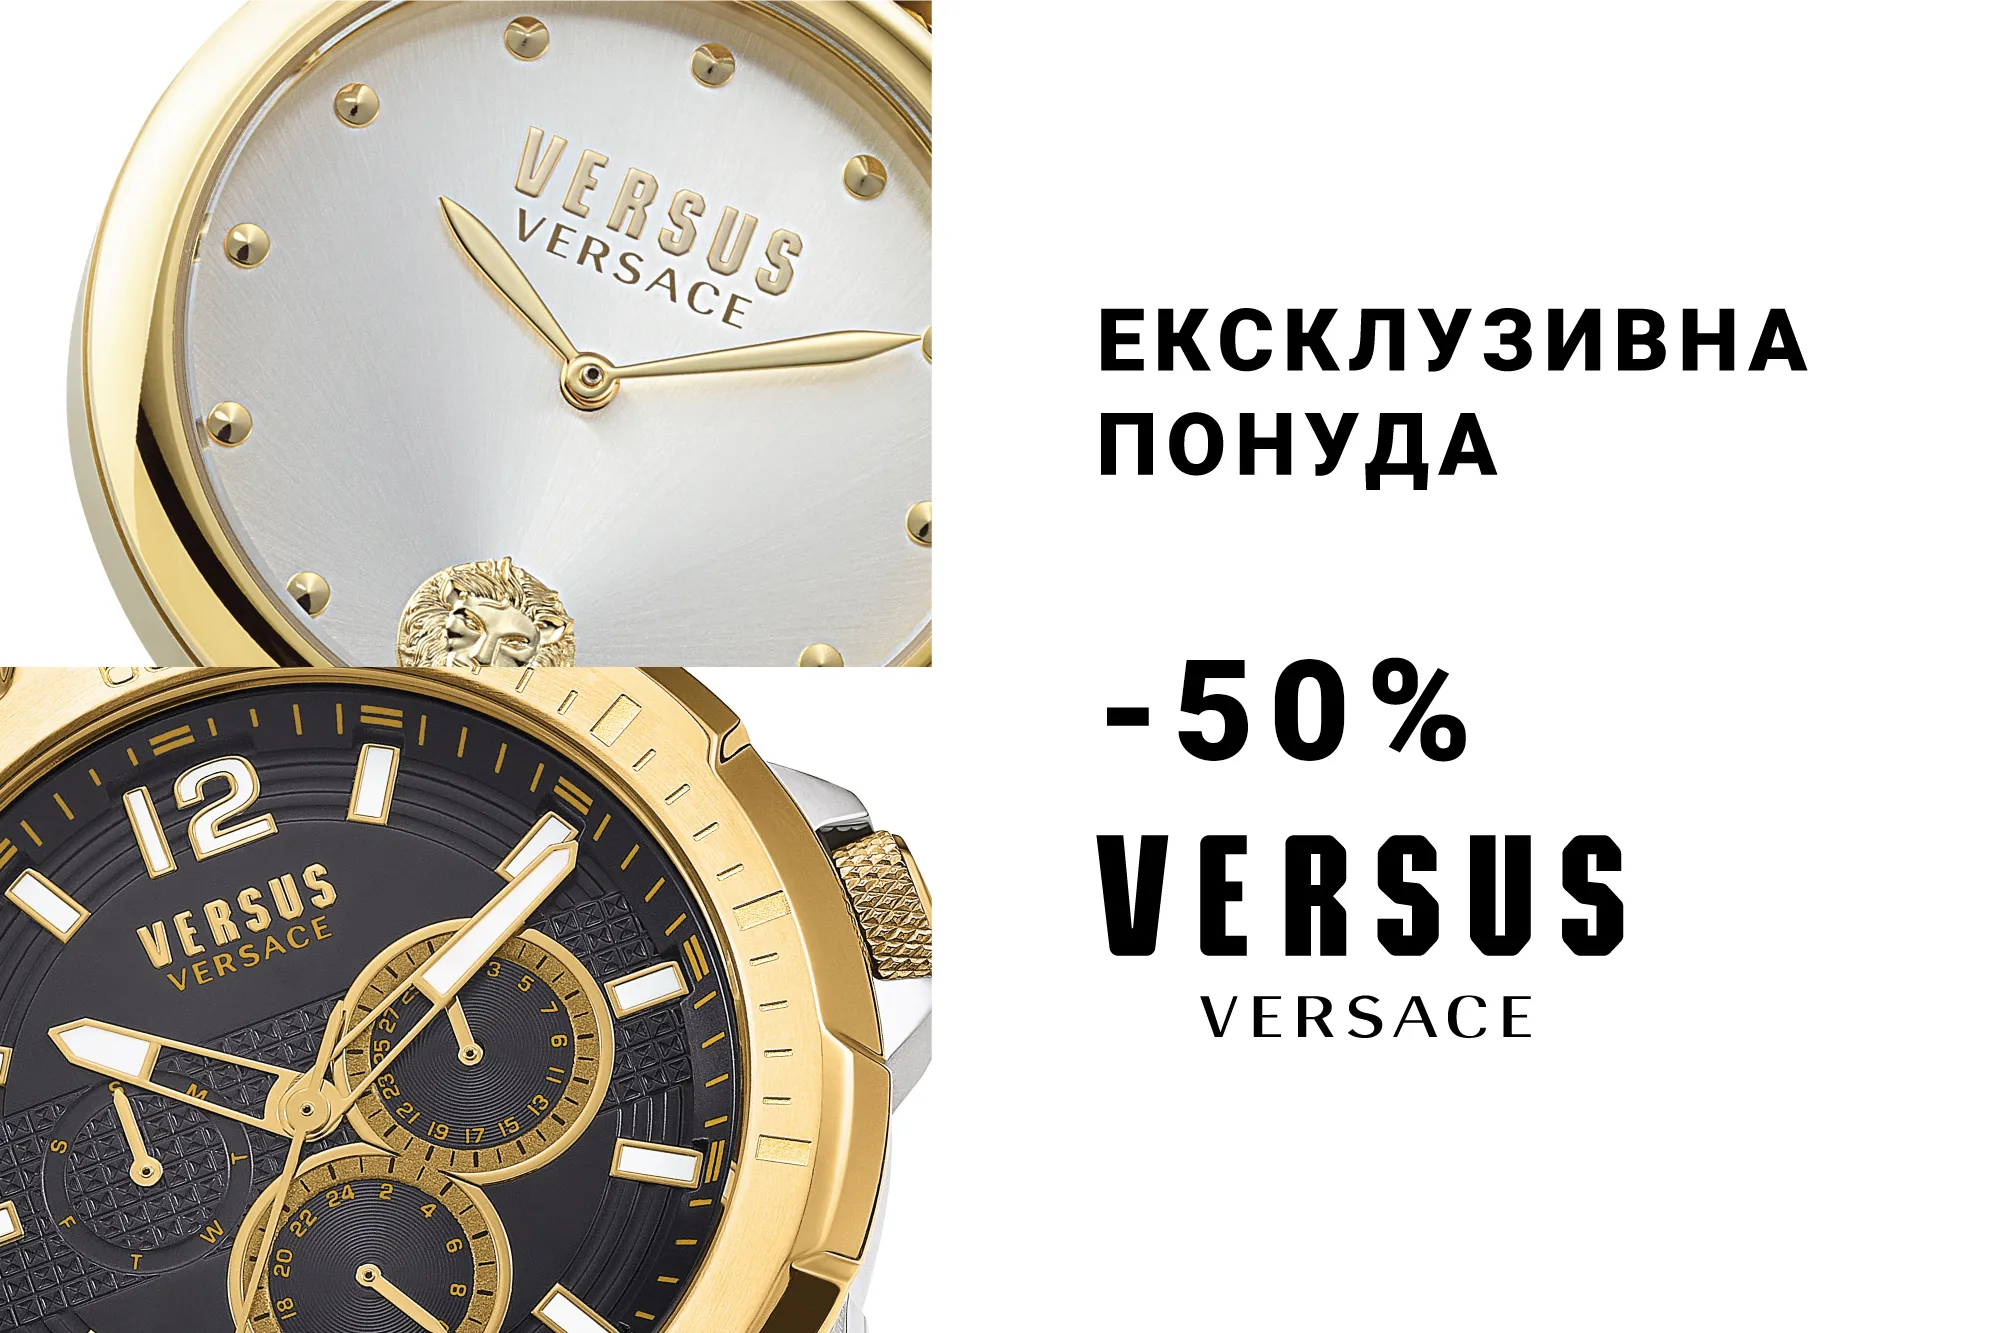 Versus Versace -50%